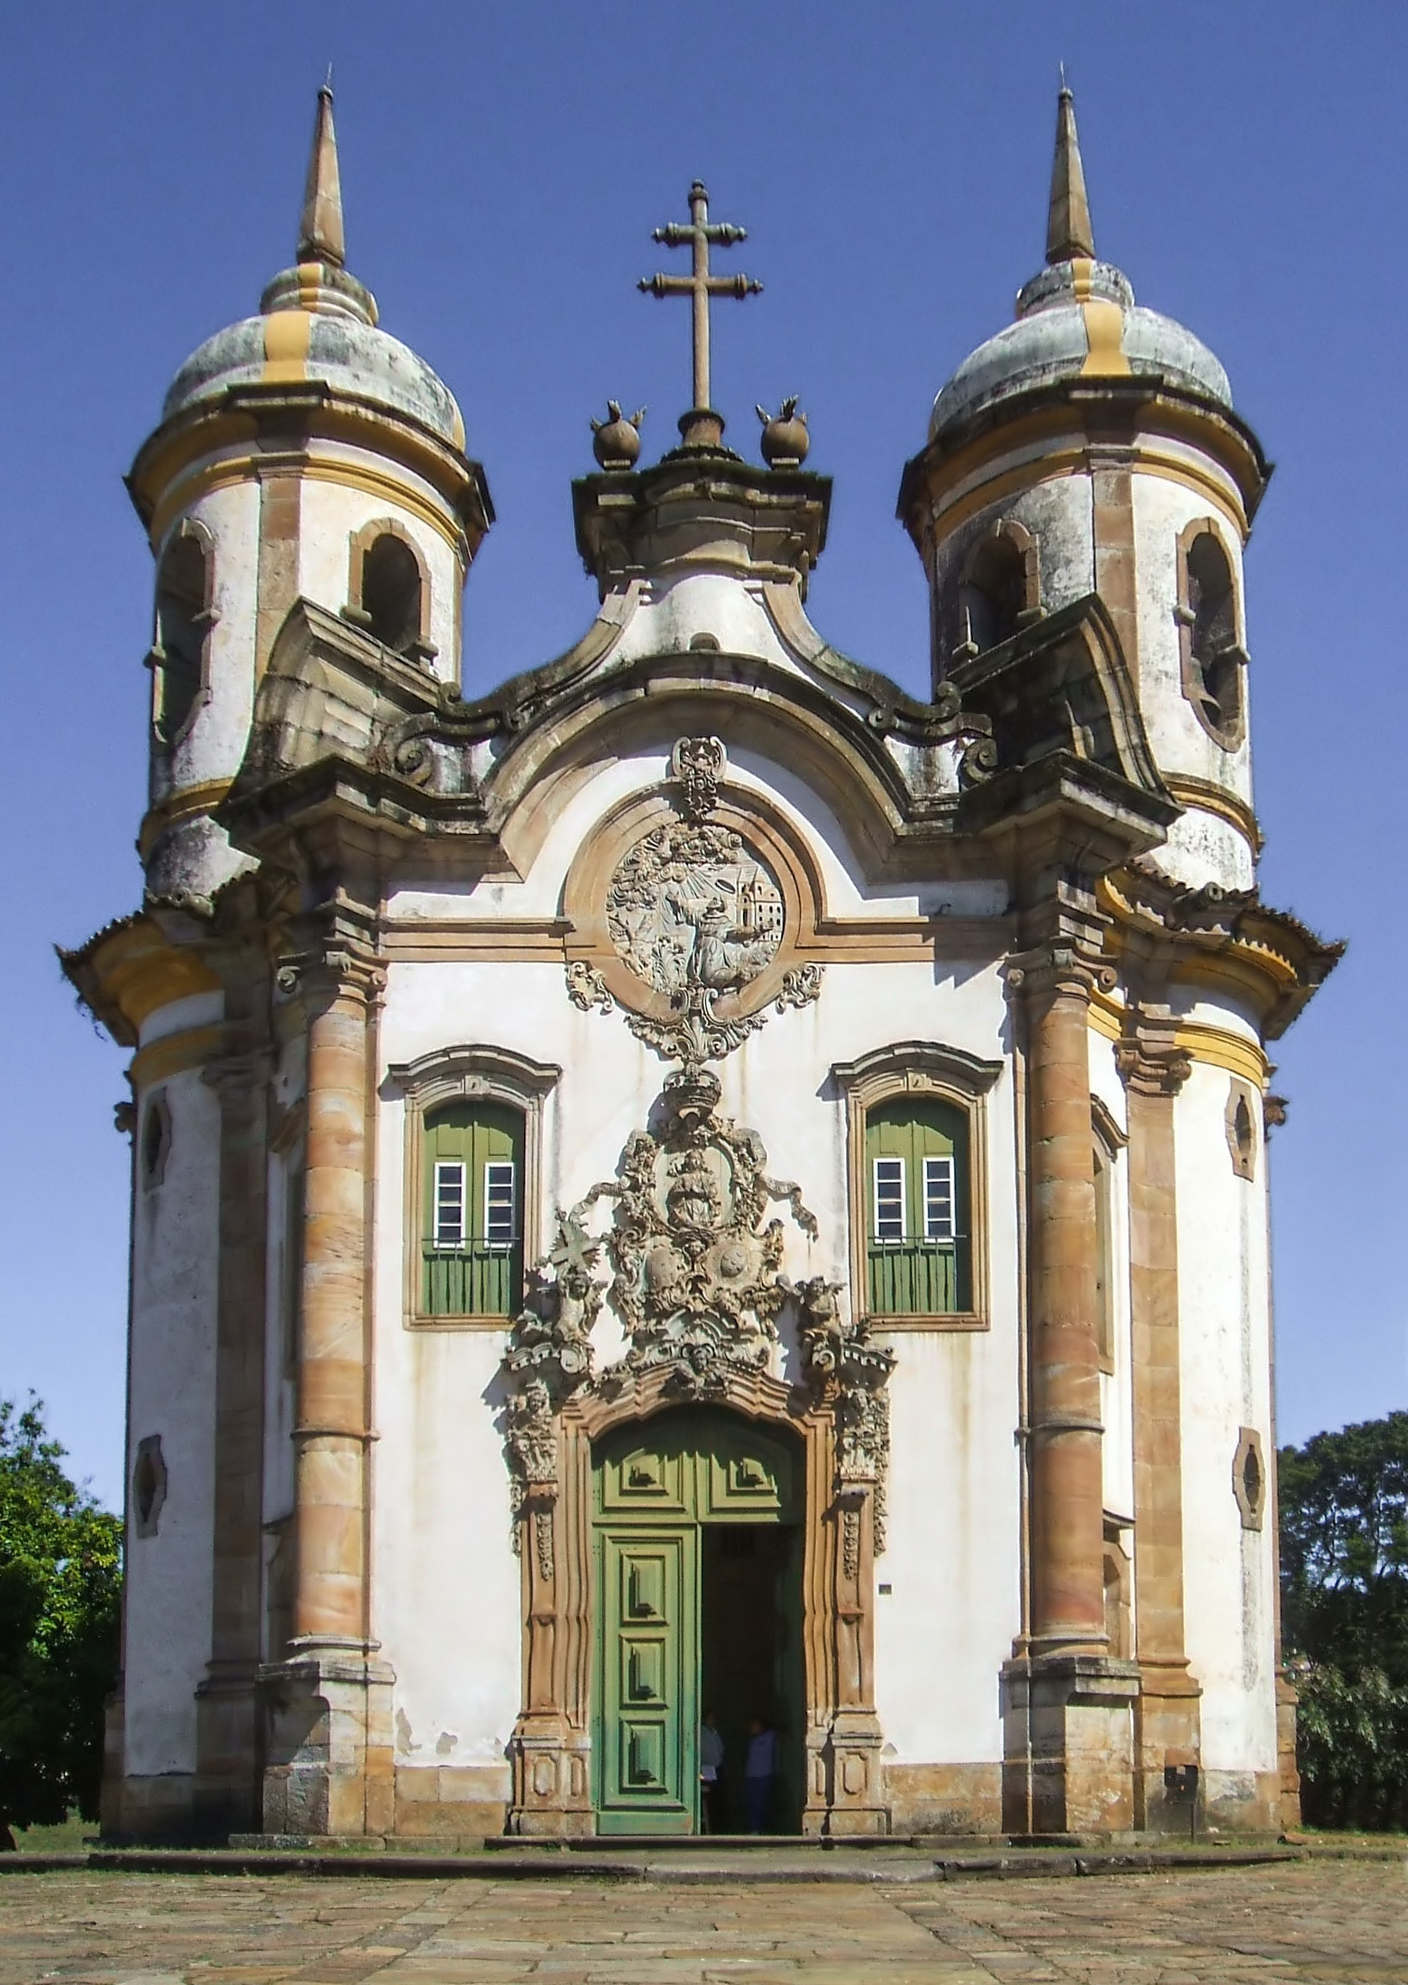 Fachada da Igreja de São Francisco de Assis, em Ouro Preto, um exemplo da influência da arquitetura portuguesa no Brasil (Foto: Sarah and Iain)